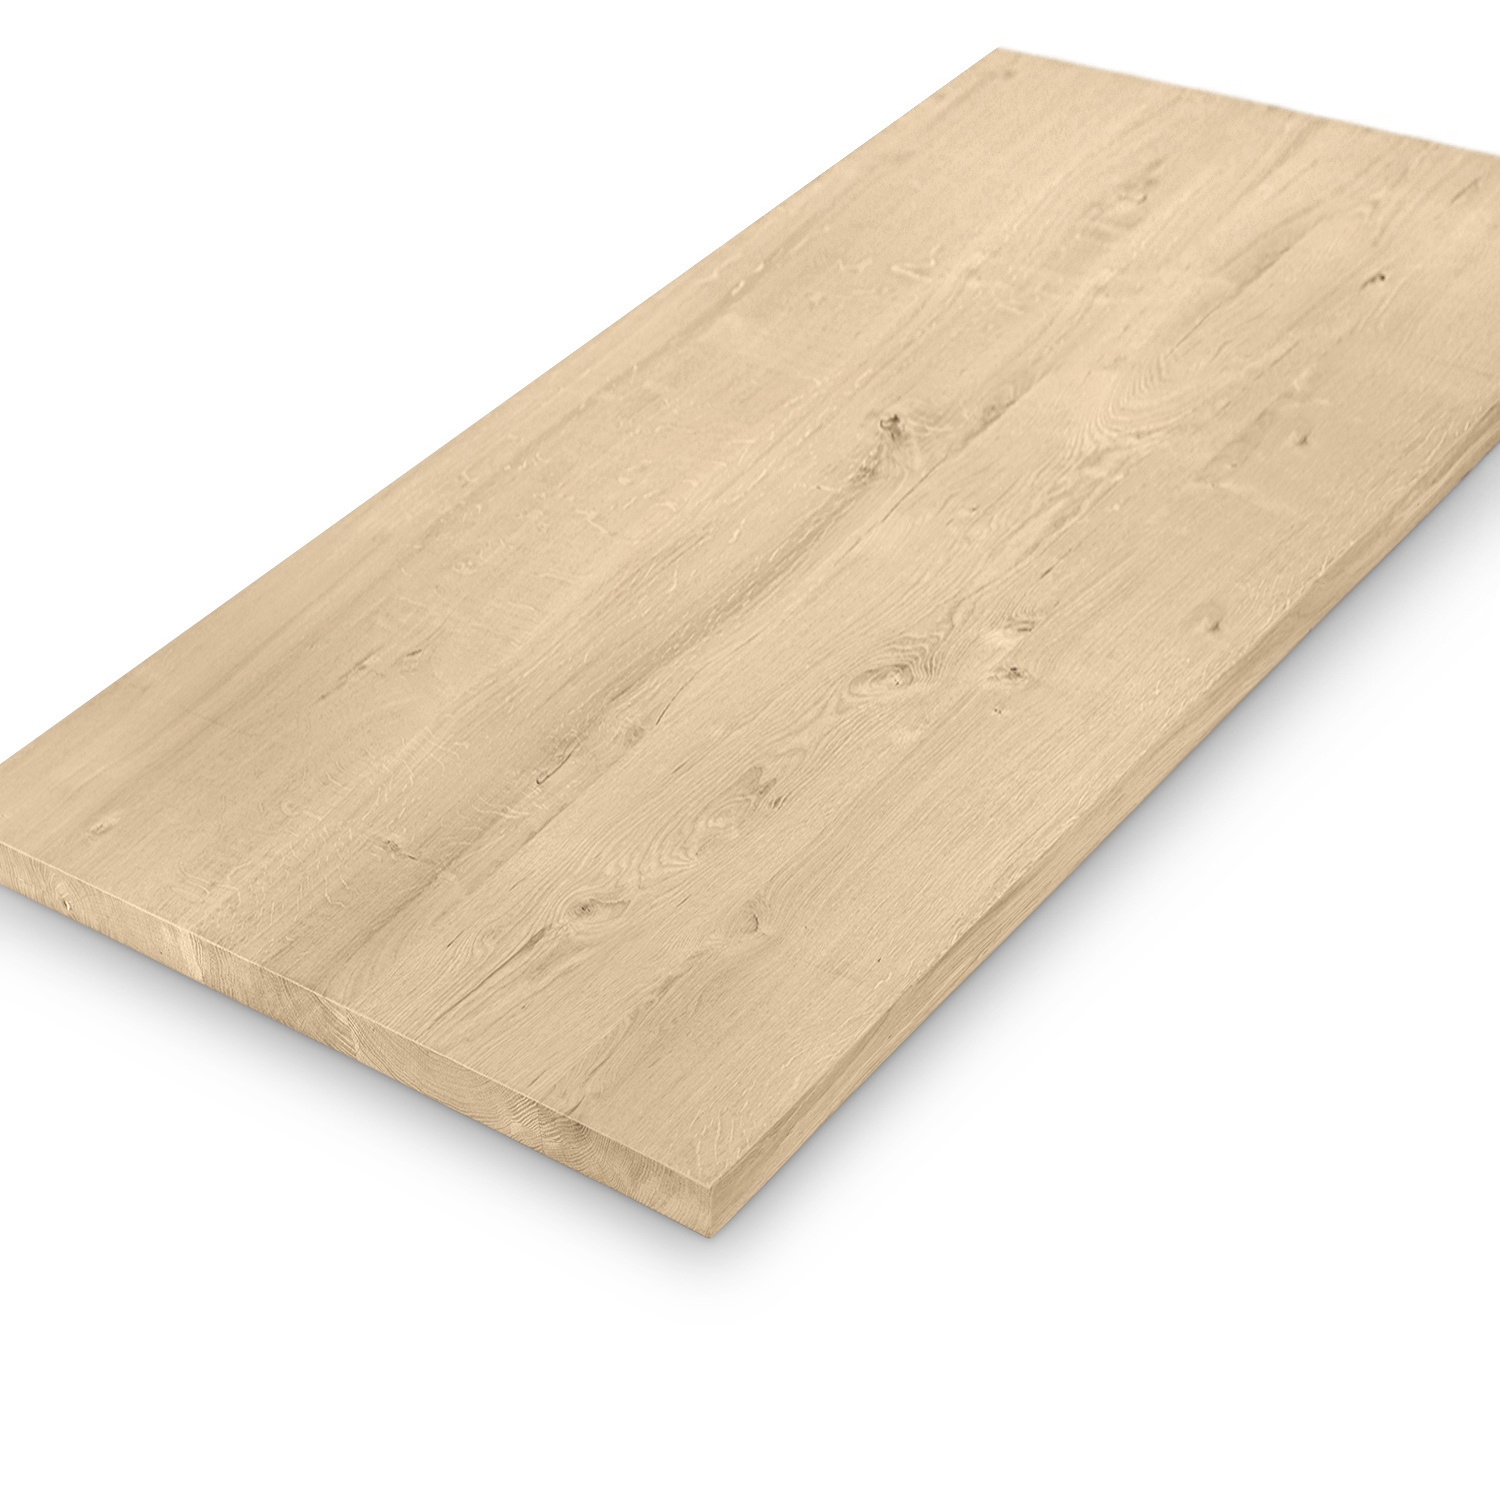  Tischplatte Eiche nach Maß - 2,7 cm dick (1-Schicht) - Breite Lamellen (10 - 12 cm breit) - Eichenholz rustikal - verleimt & künstlich getrocknet (HF 8-12%) - 50-120x50-248 cm